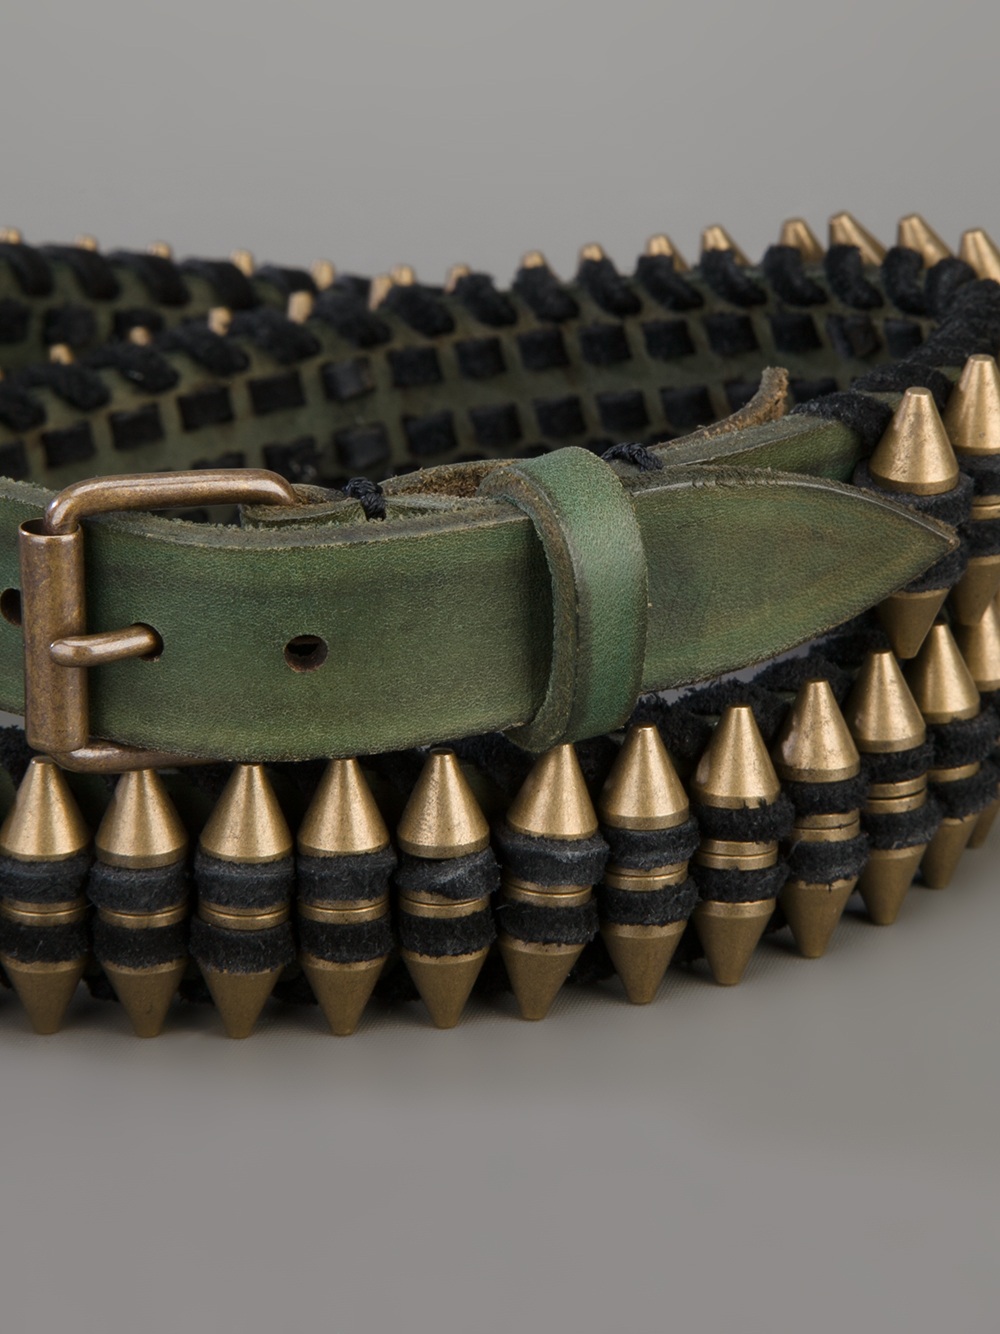 Odpovědět Stravování dok balmain bullet belt replica Zvlněný Příbuzný směr